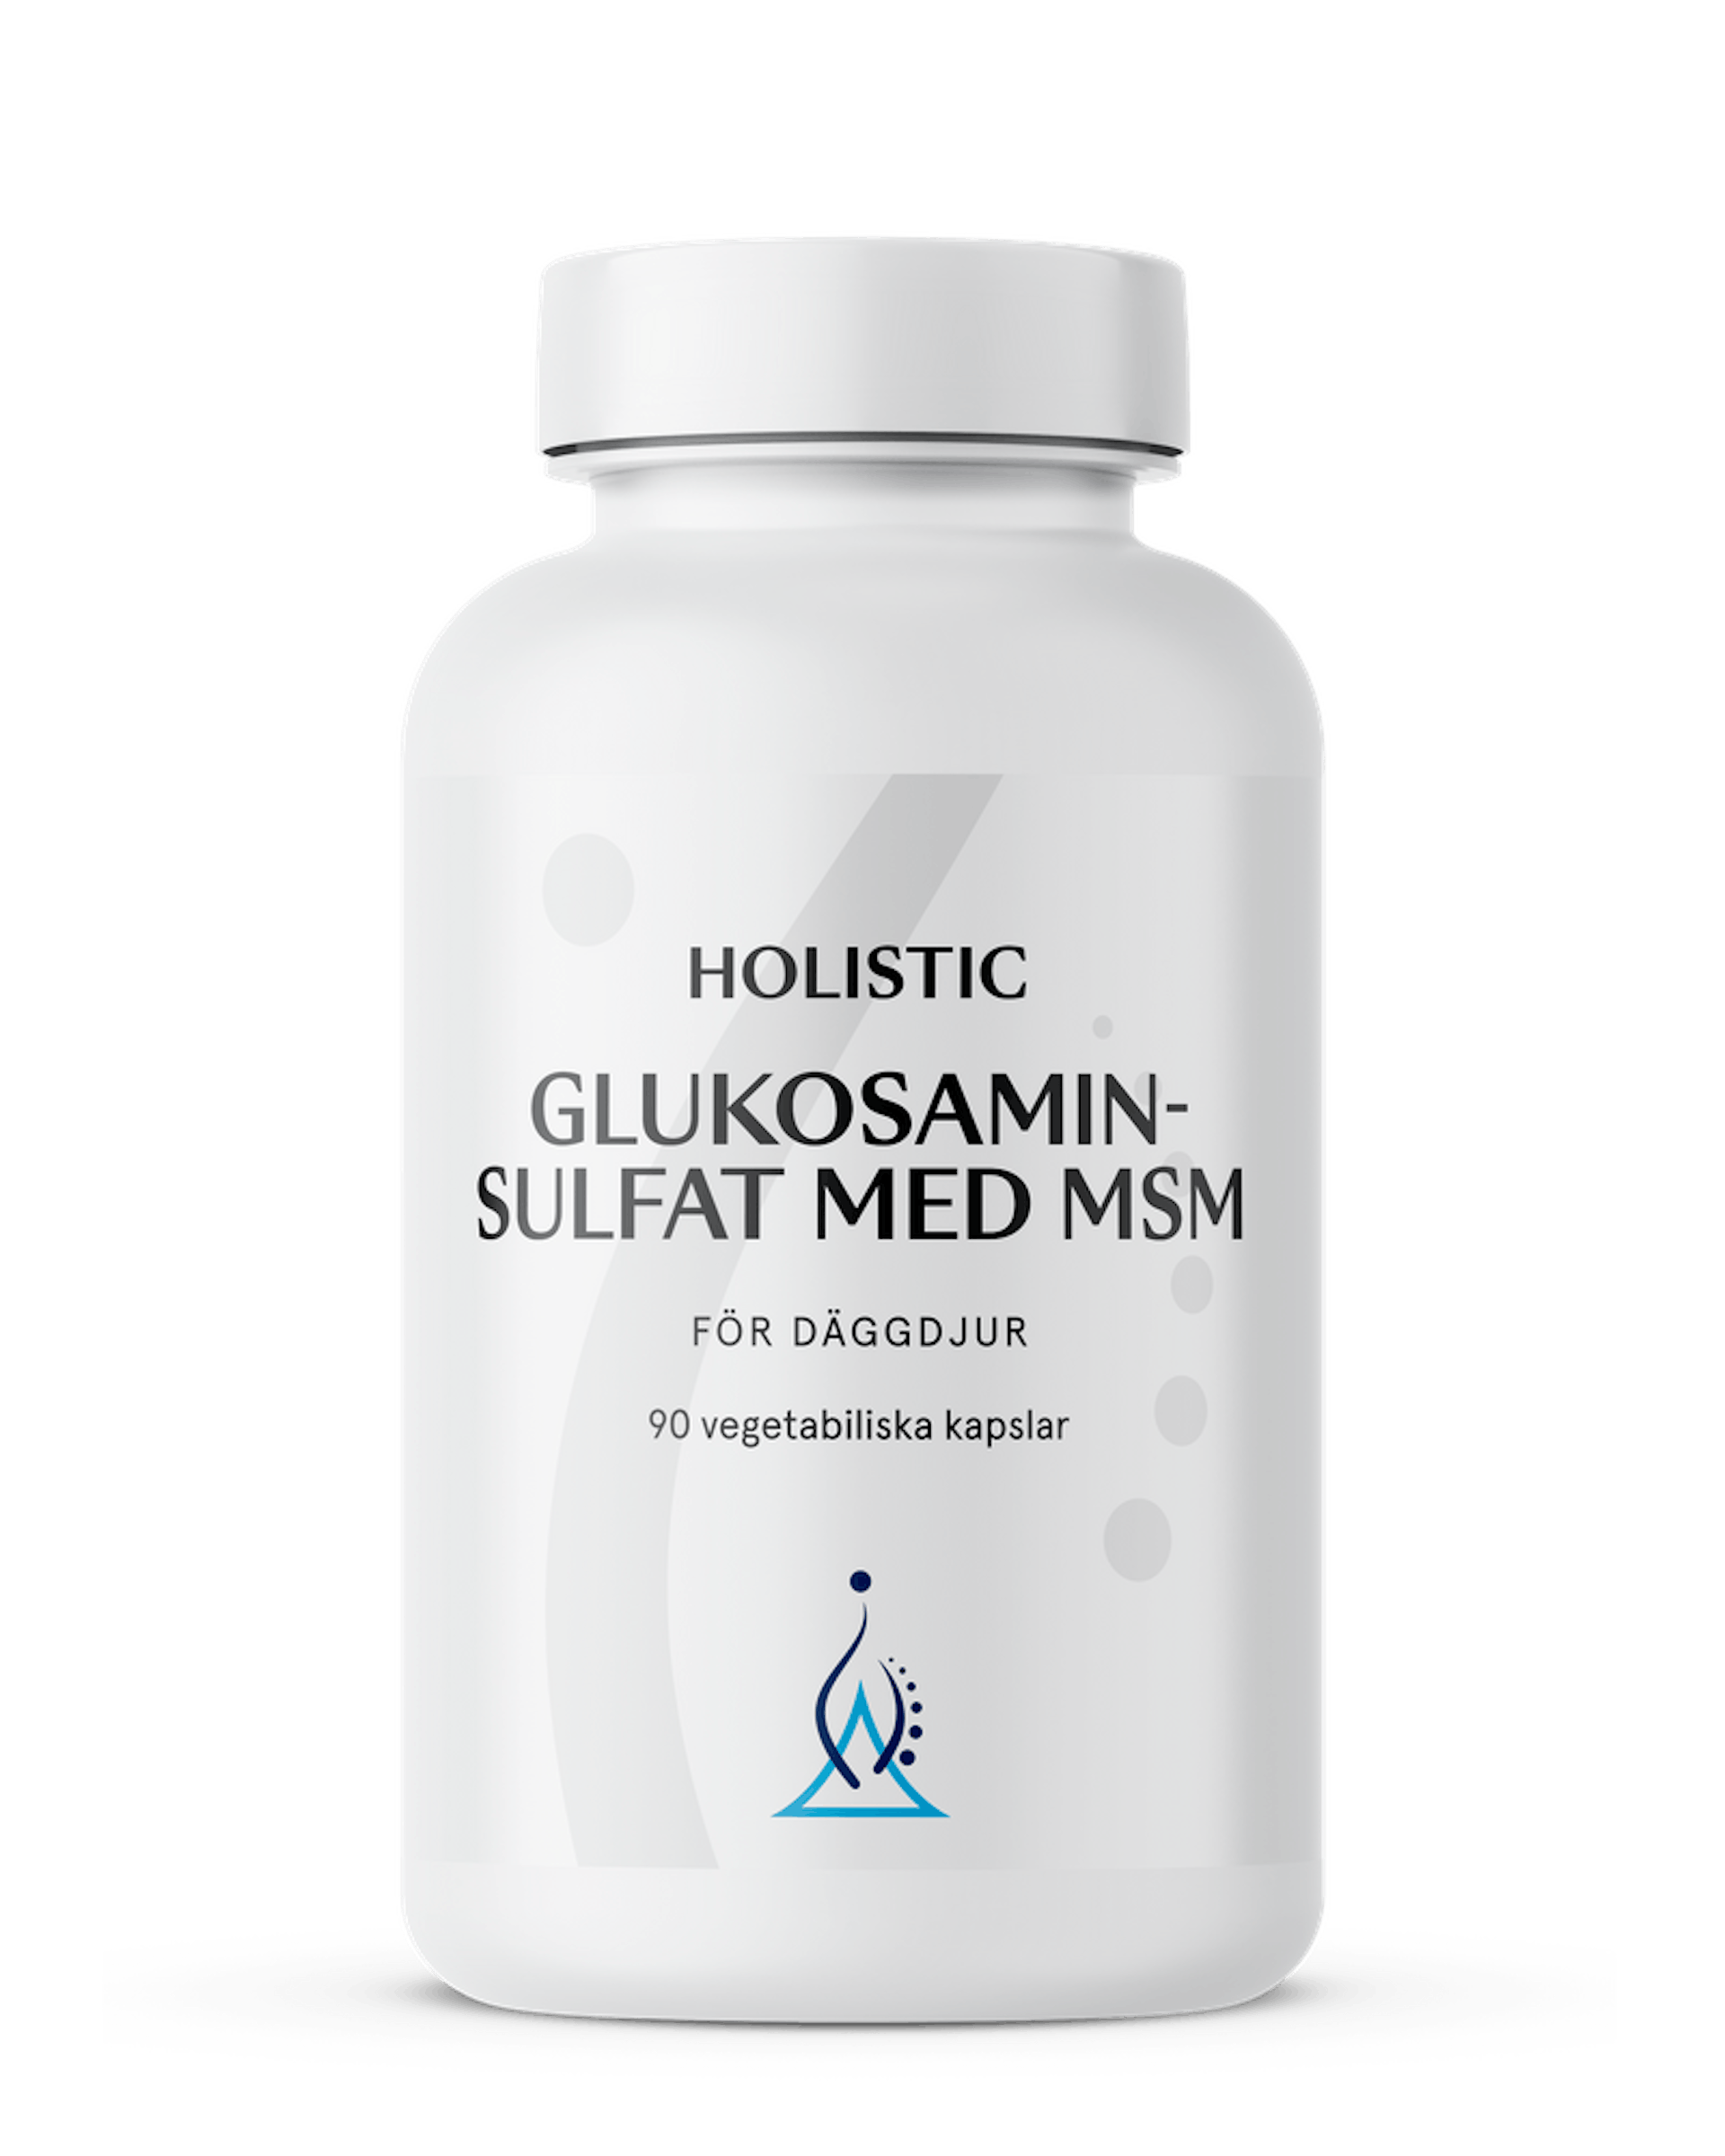 Glukosaminsulfat med MSM, 90 kapslar (1 av 1)